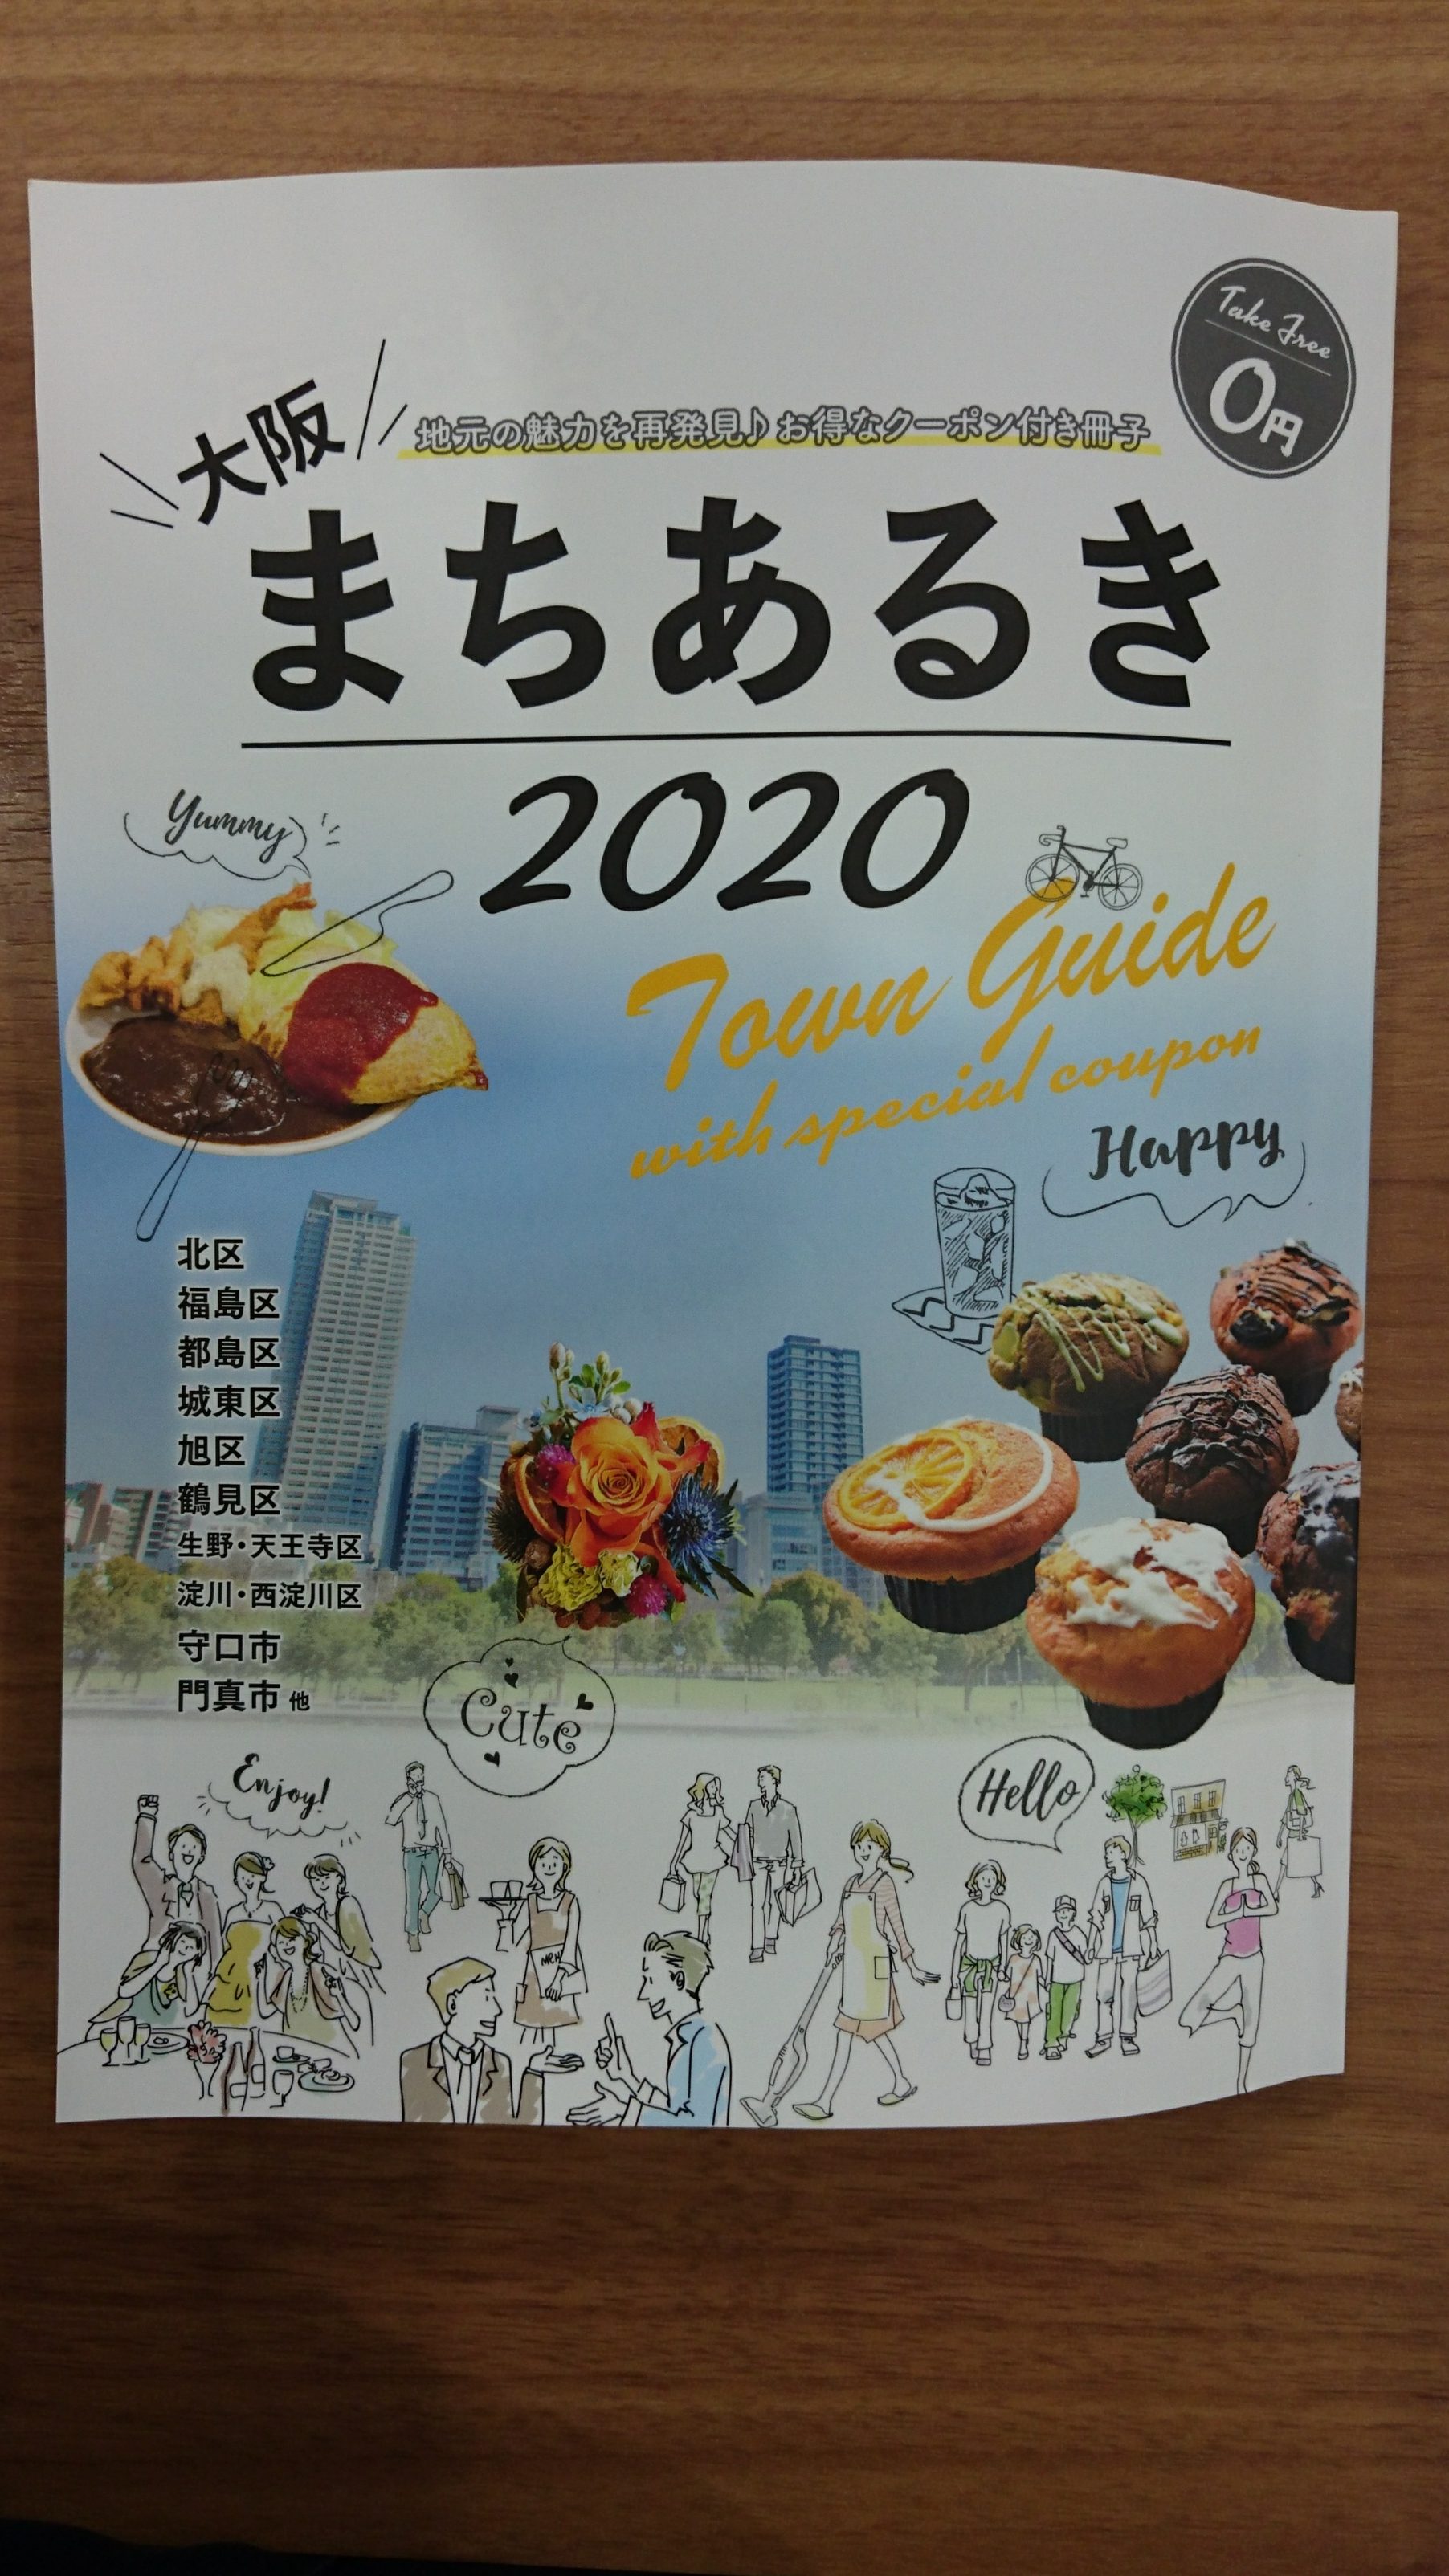 大阪の情報誌「まちあるき2020」に掲載